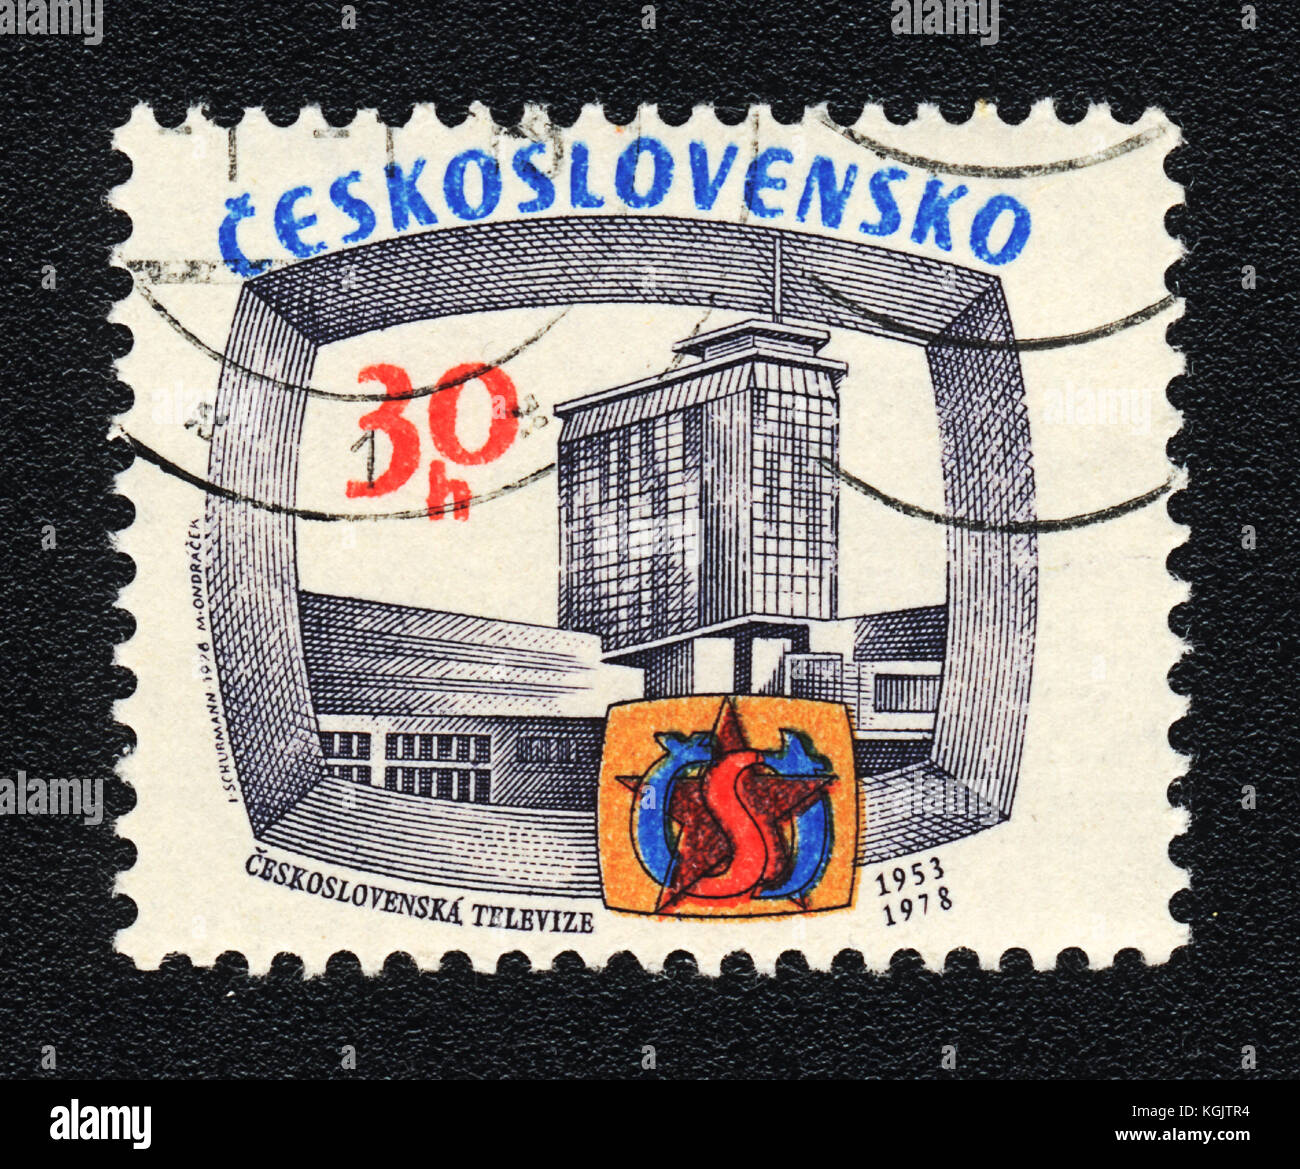 Eine Briefmarke in der Tschechoslowakei zeigt tschechoslowakischen Fernsehen, ca. 1978 gedruckt Stockfoto